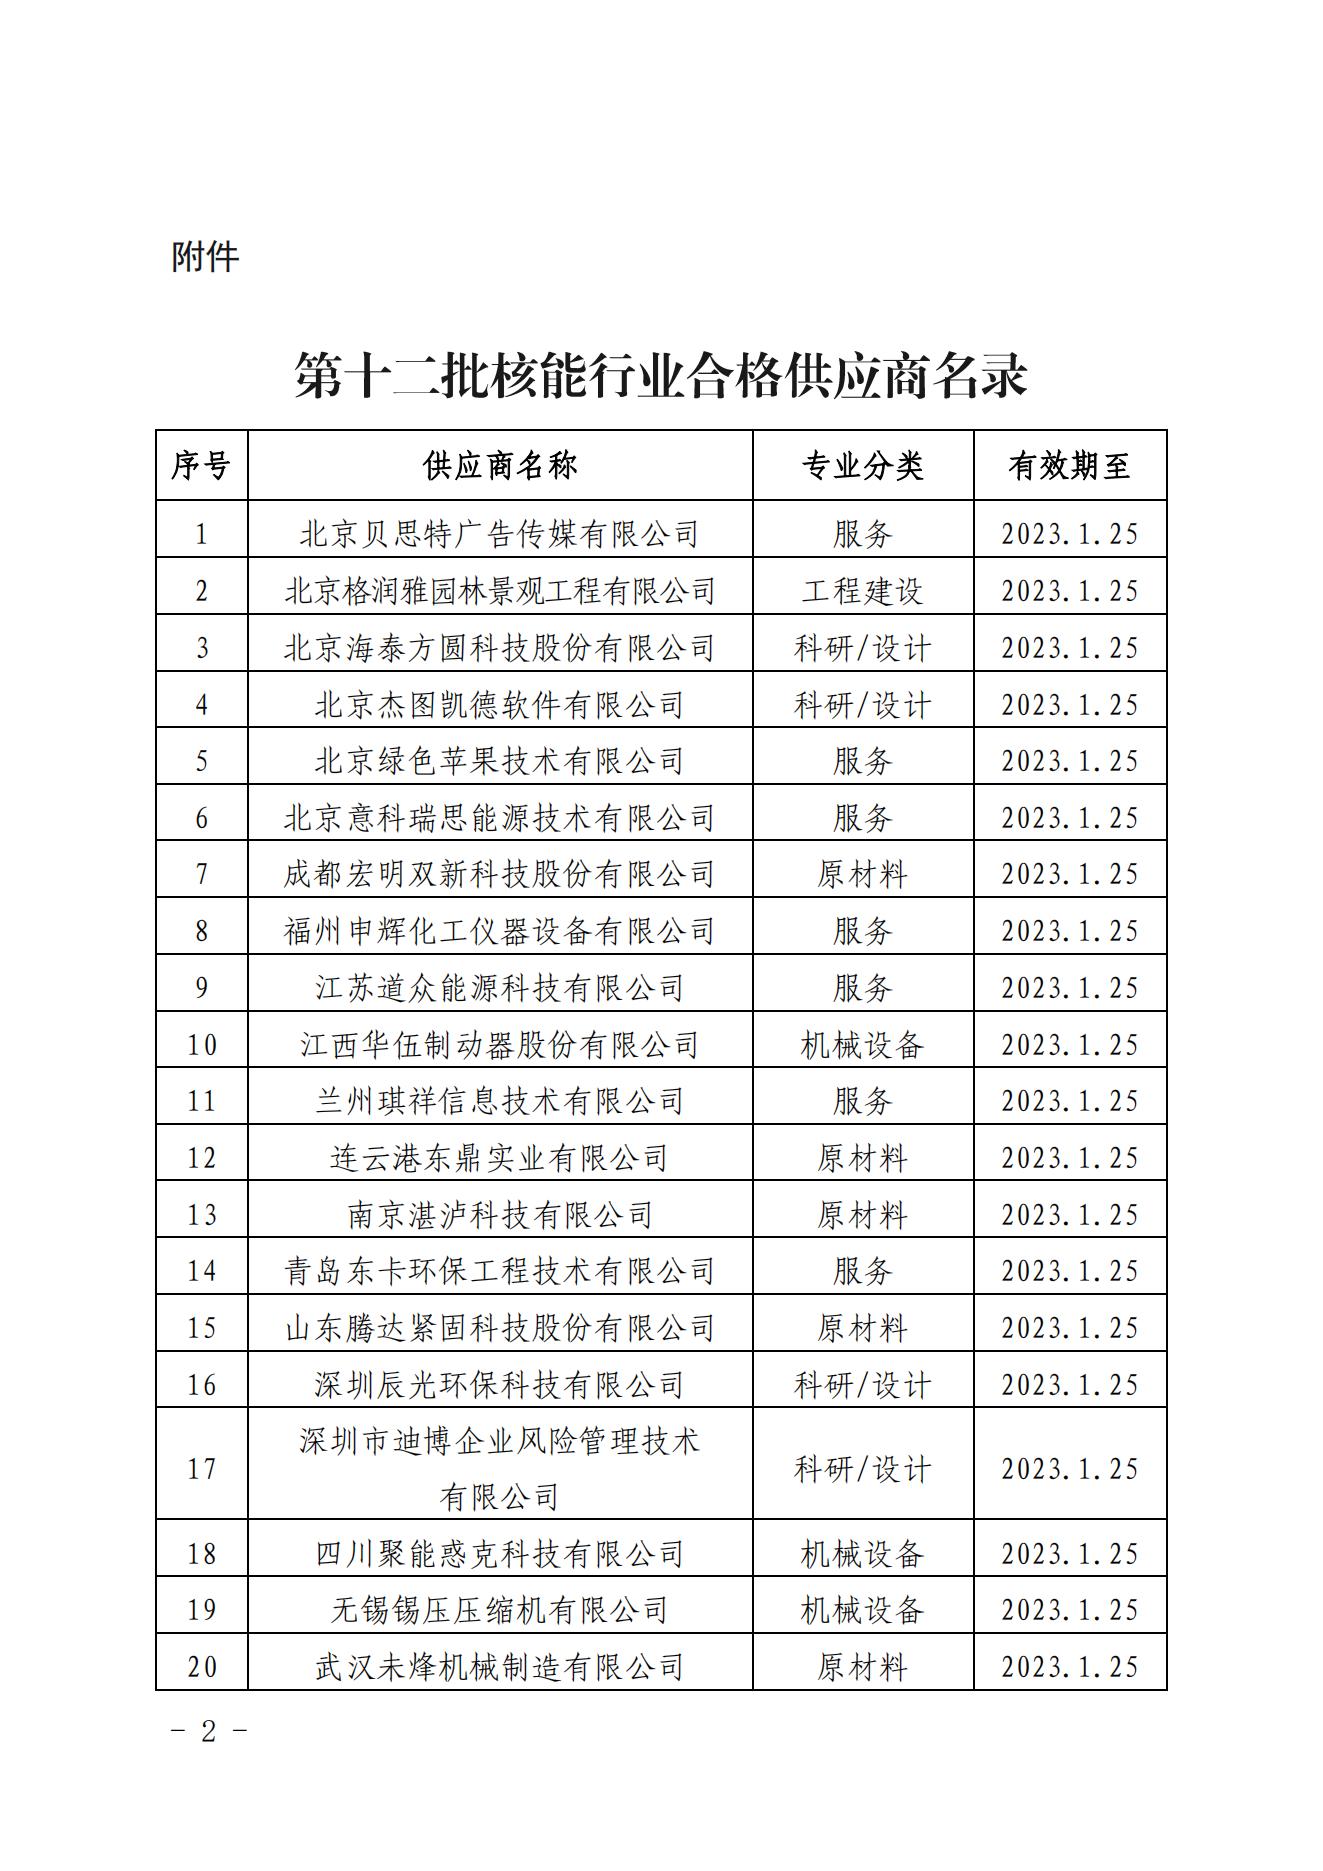 关于发布中国核能行业协会核能行业第十二批合格供应商名录的公告_01.jpg